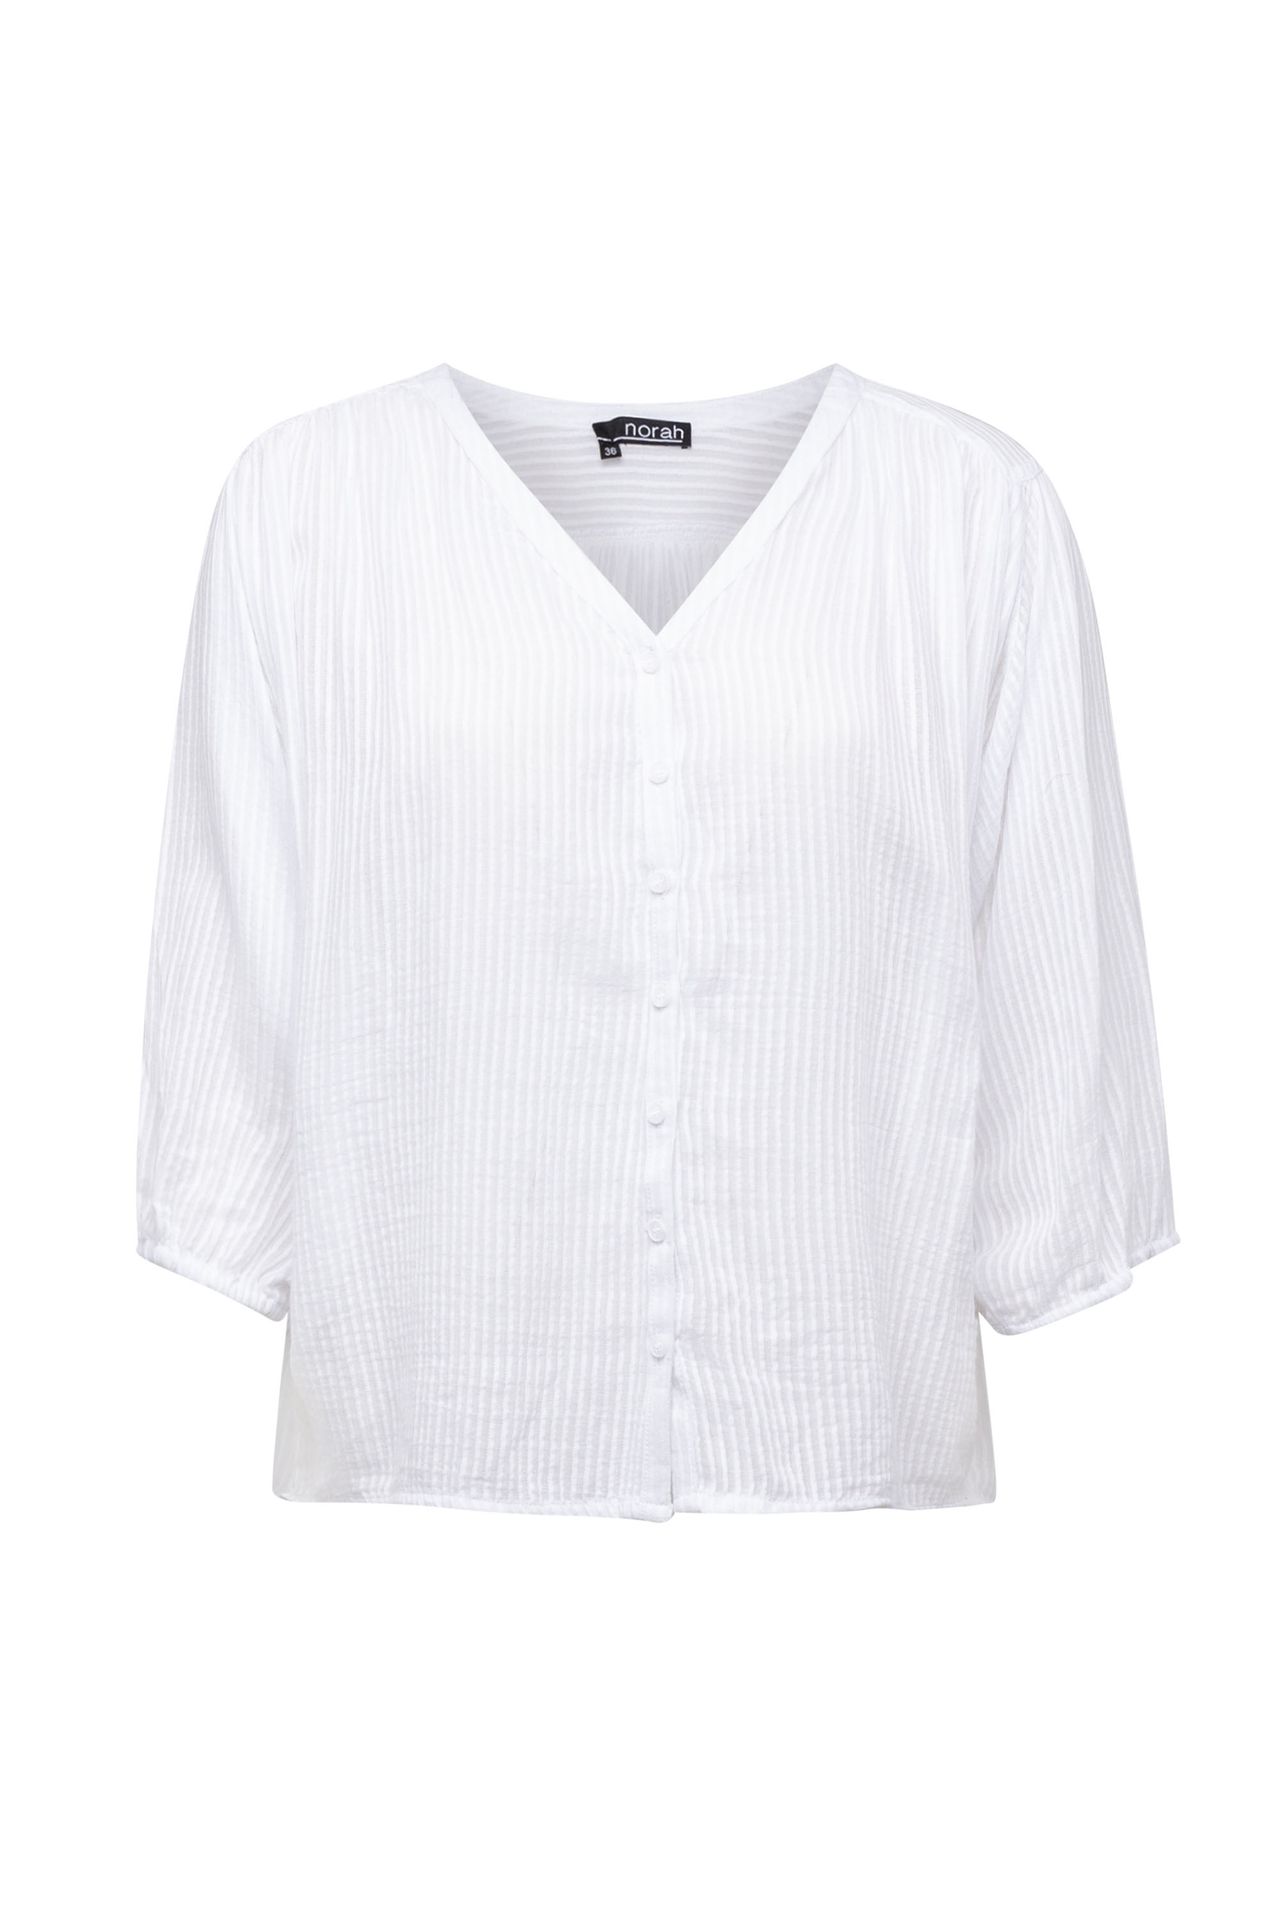 Norah Witte blouse met streeppatroon white 213741-100